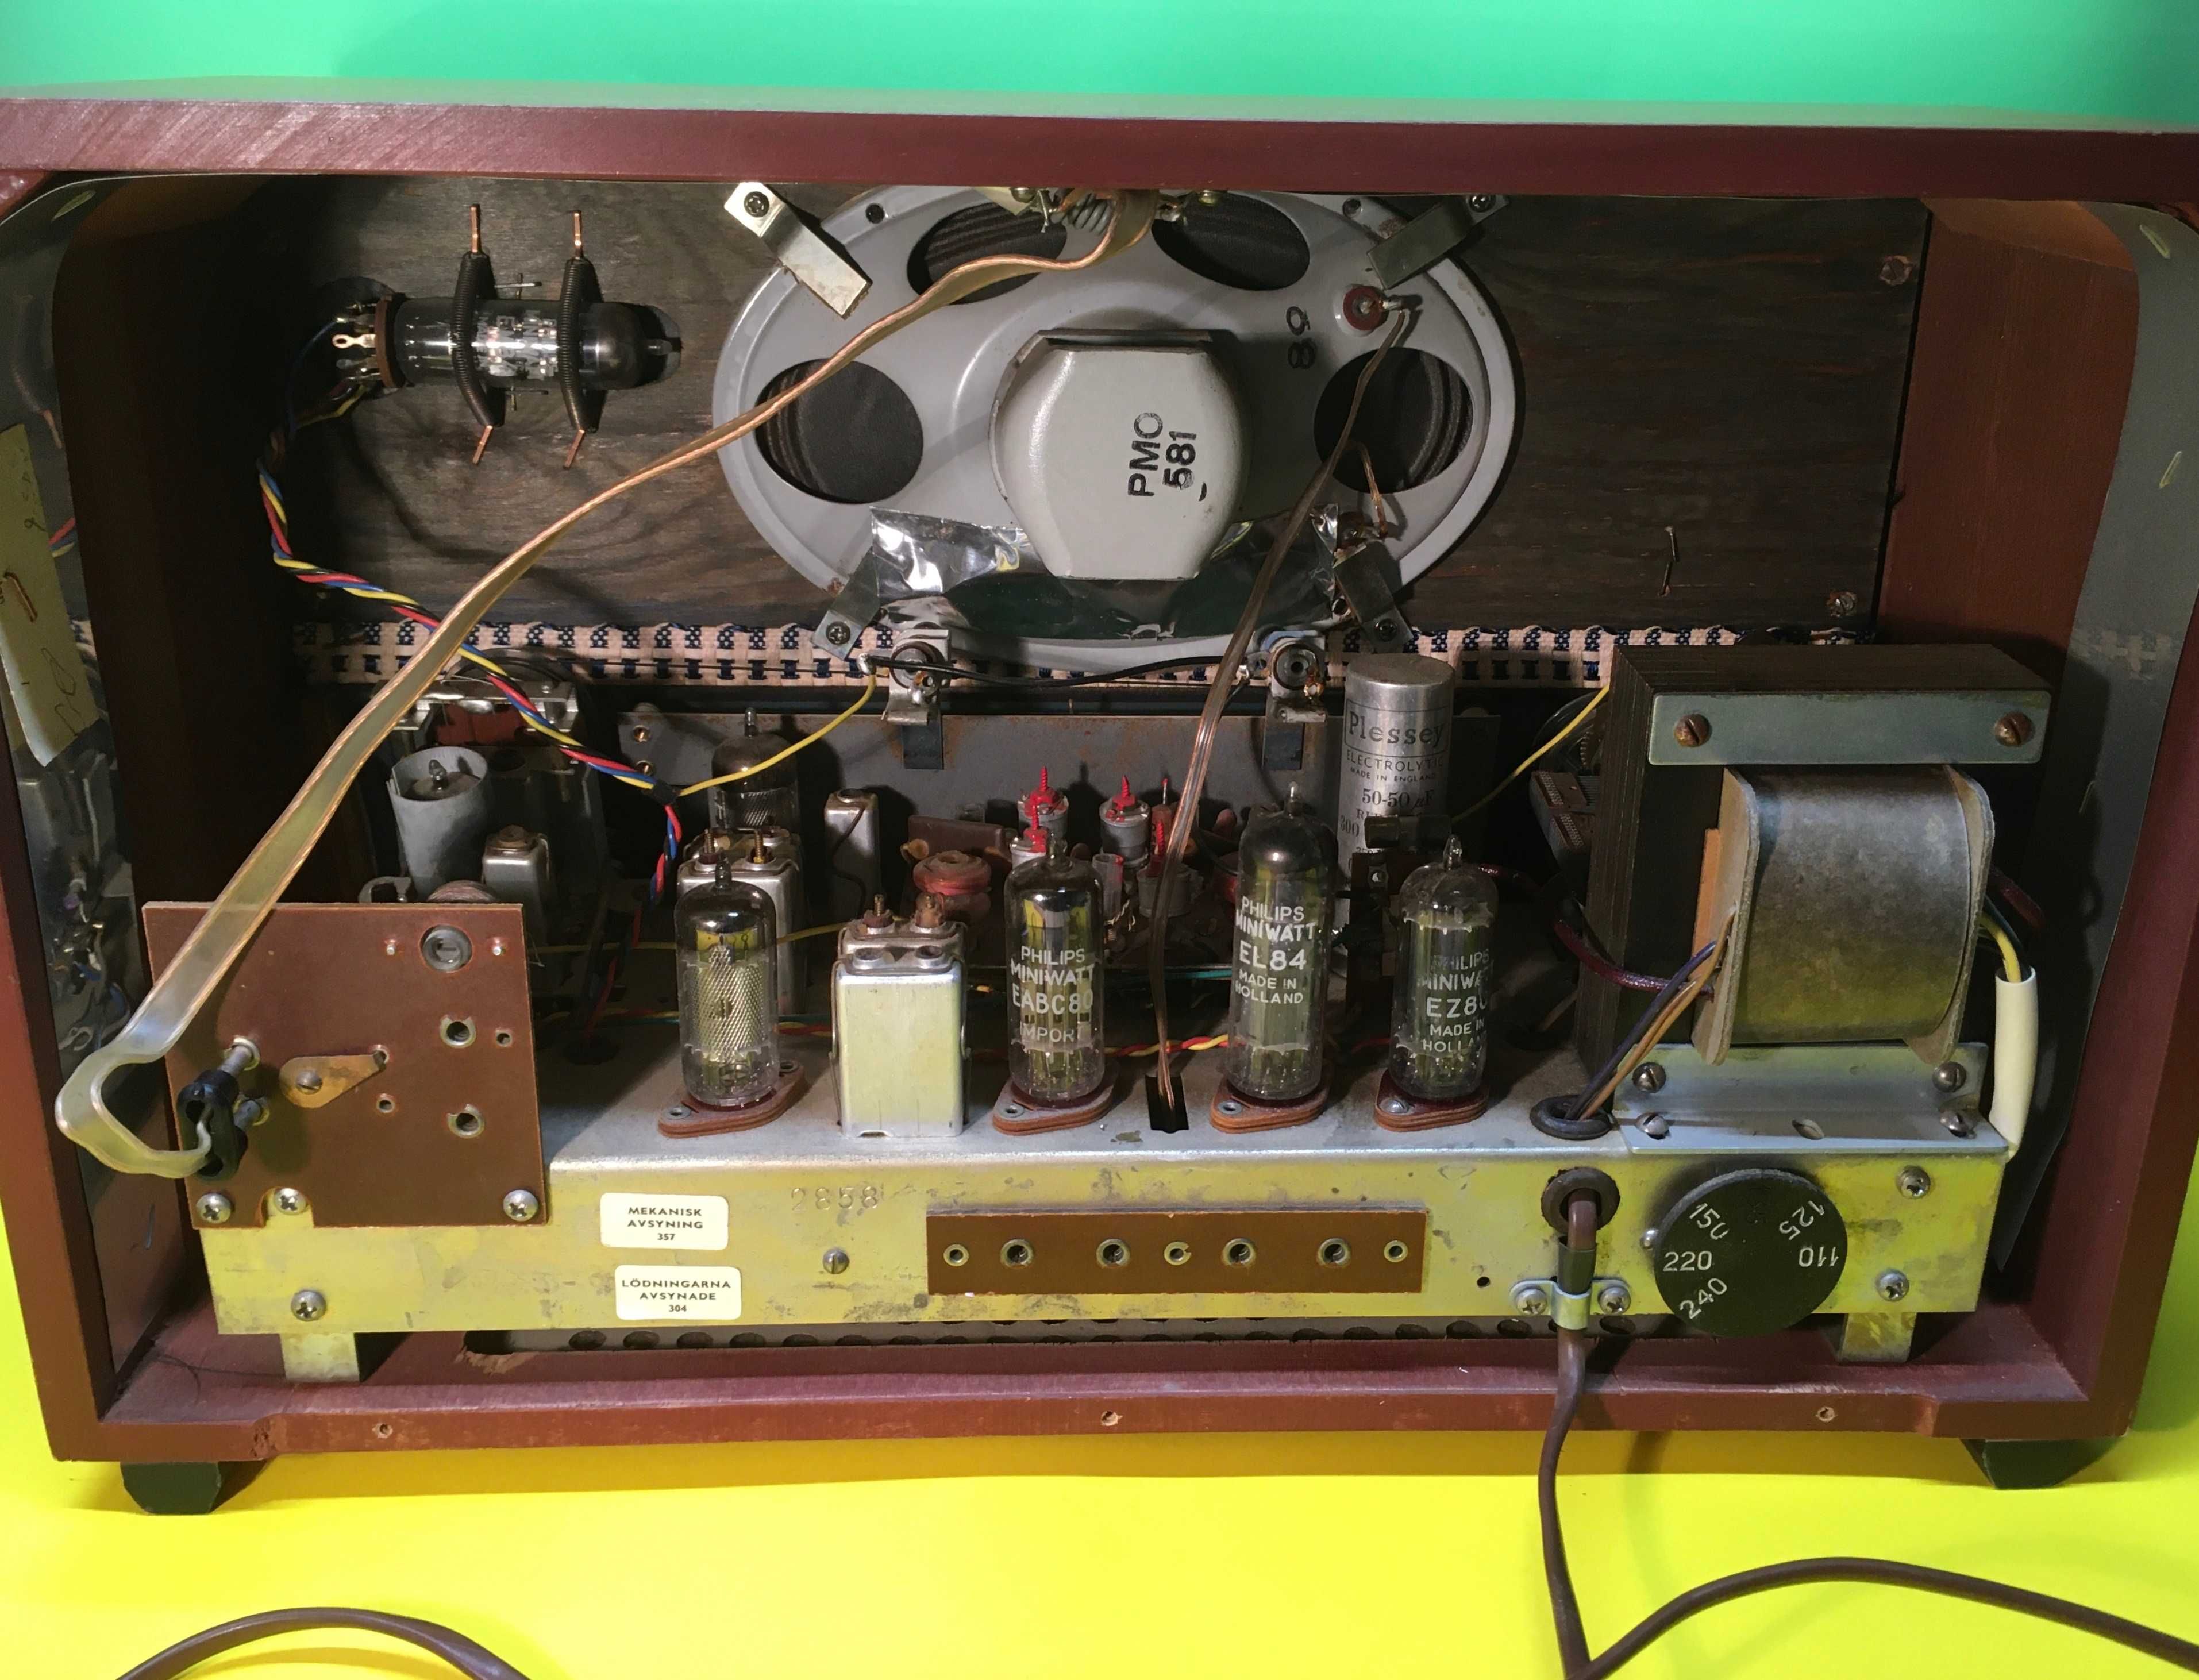 Ретро Радио Monark Tobo Bruk Typ 1901 FM Работи топ състояние 1960г.